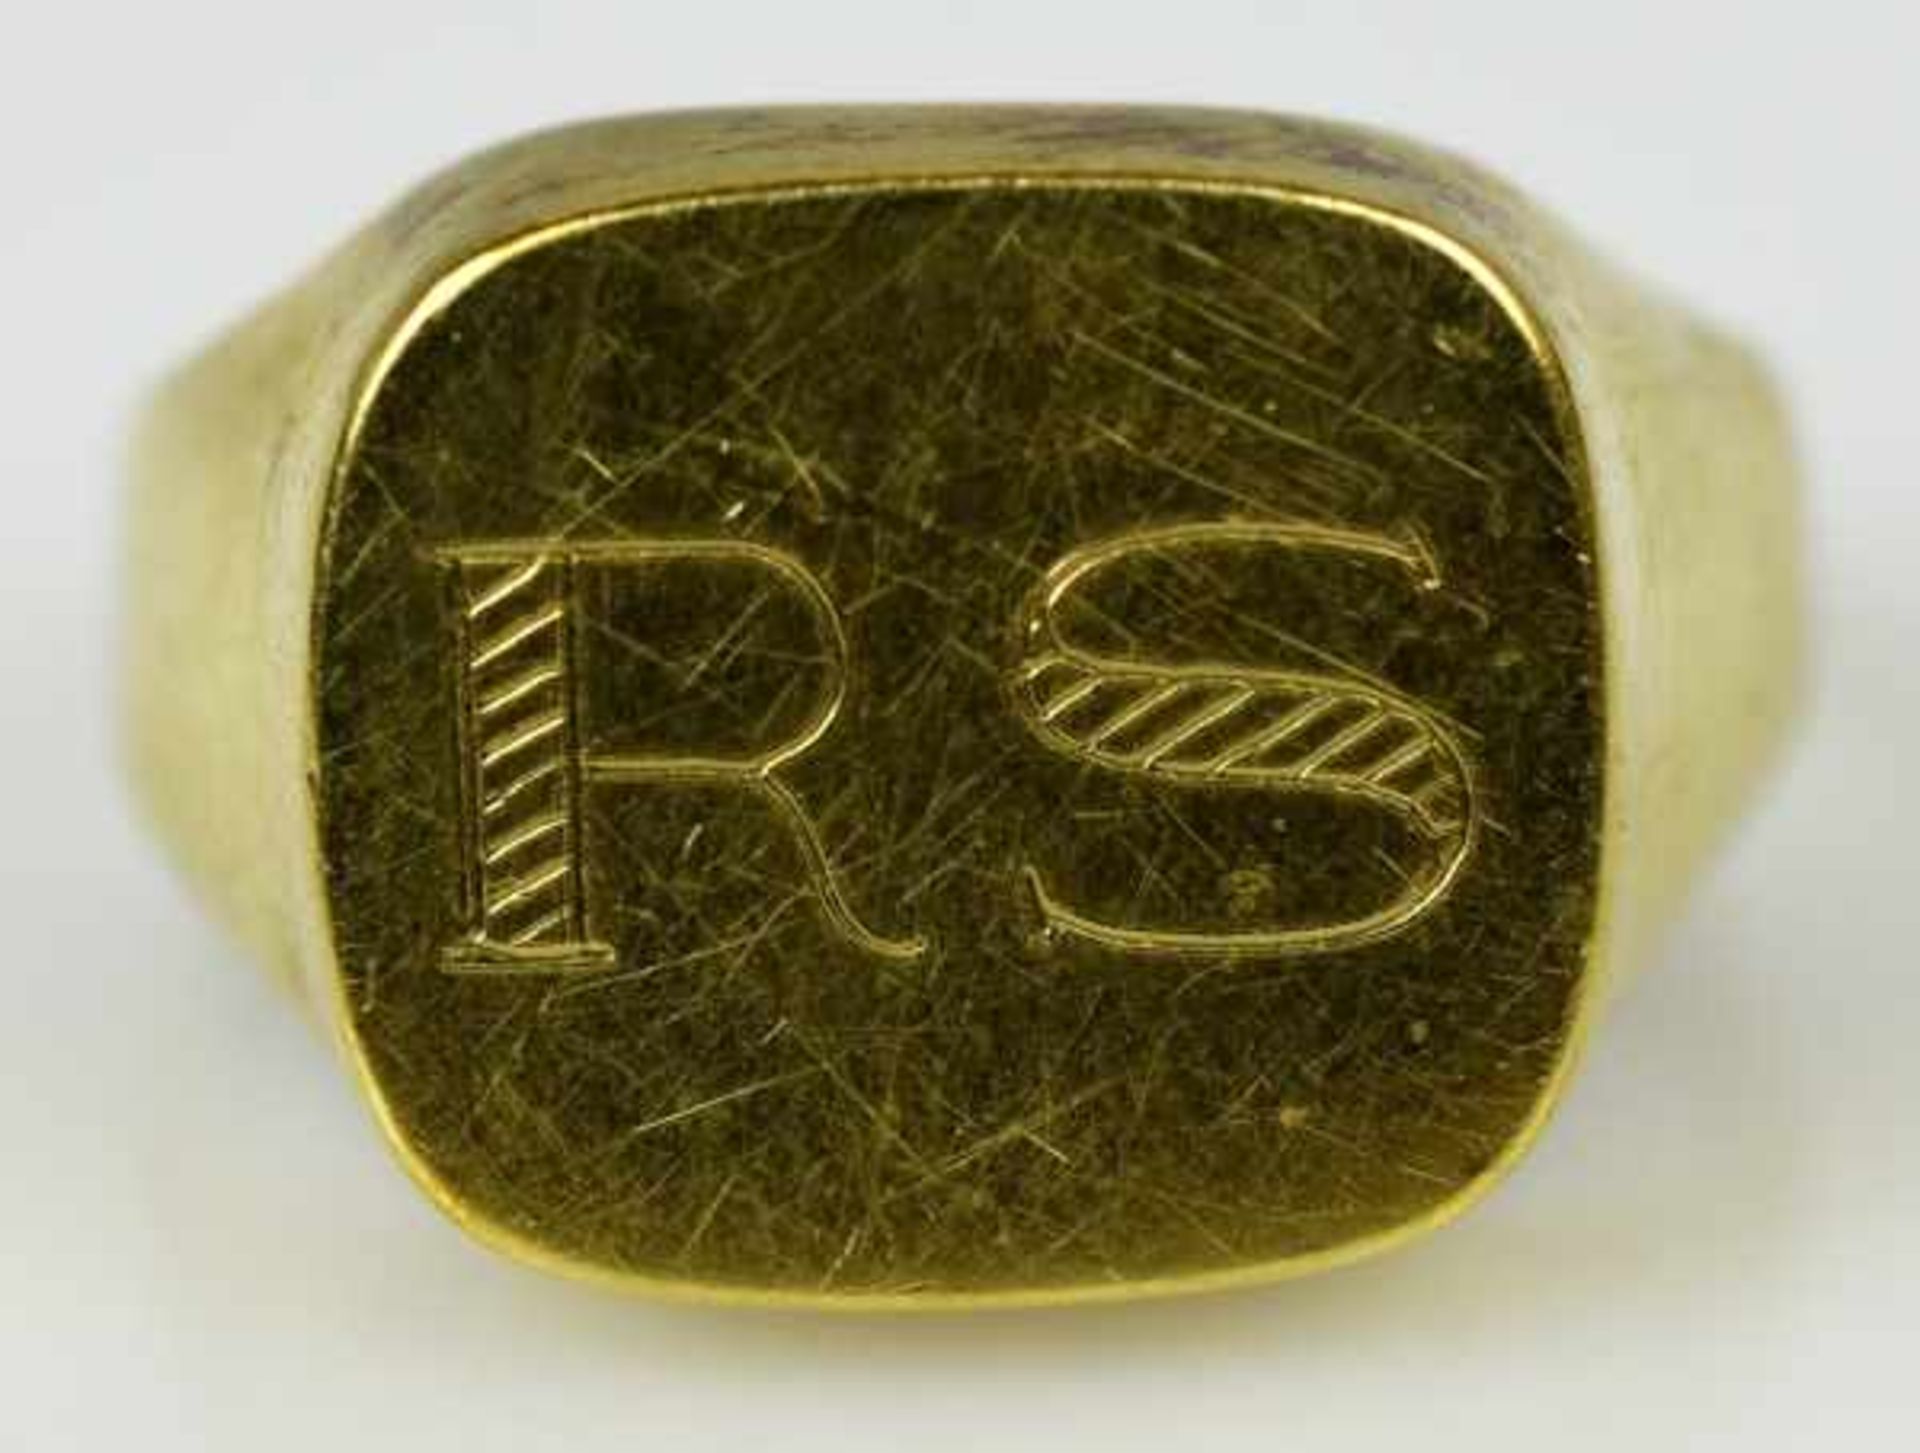 MONOGRAMMRING mit ovaler Goldplatte, darauf ziseliertes Monogramm " RS", Gelbgold 14ct, 3,8g, Gr.